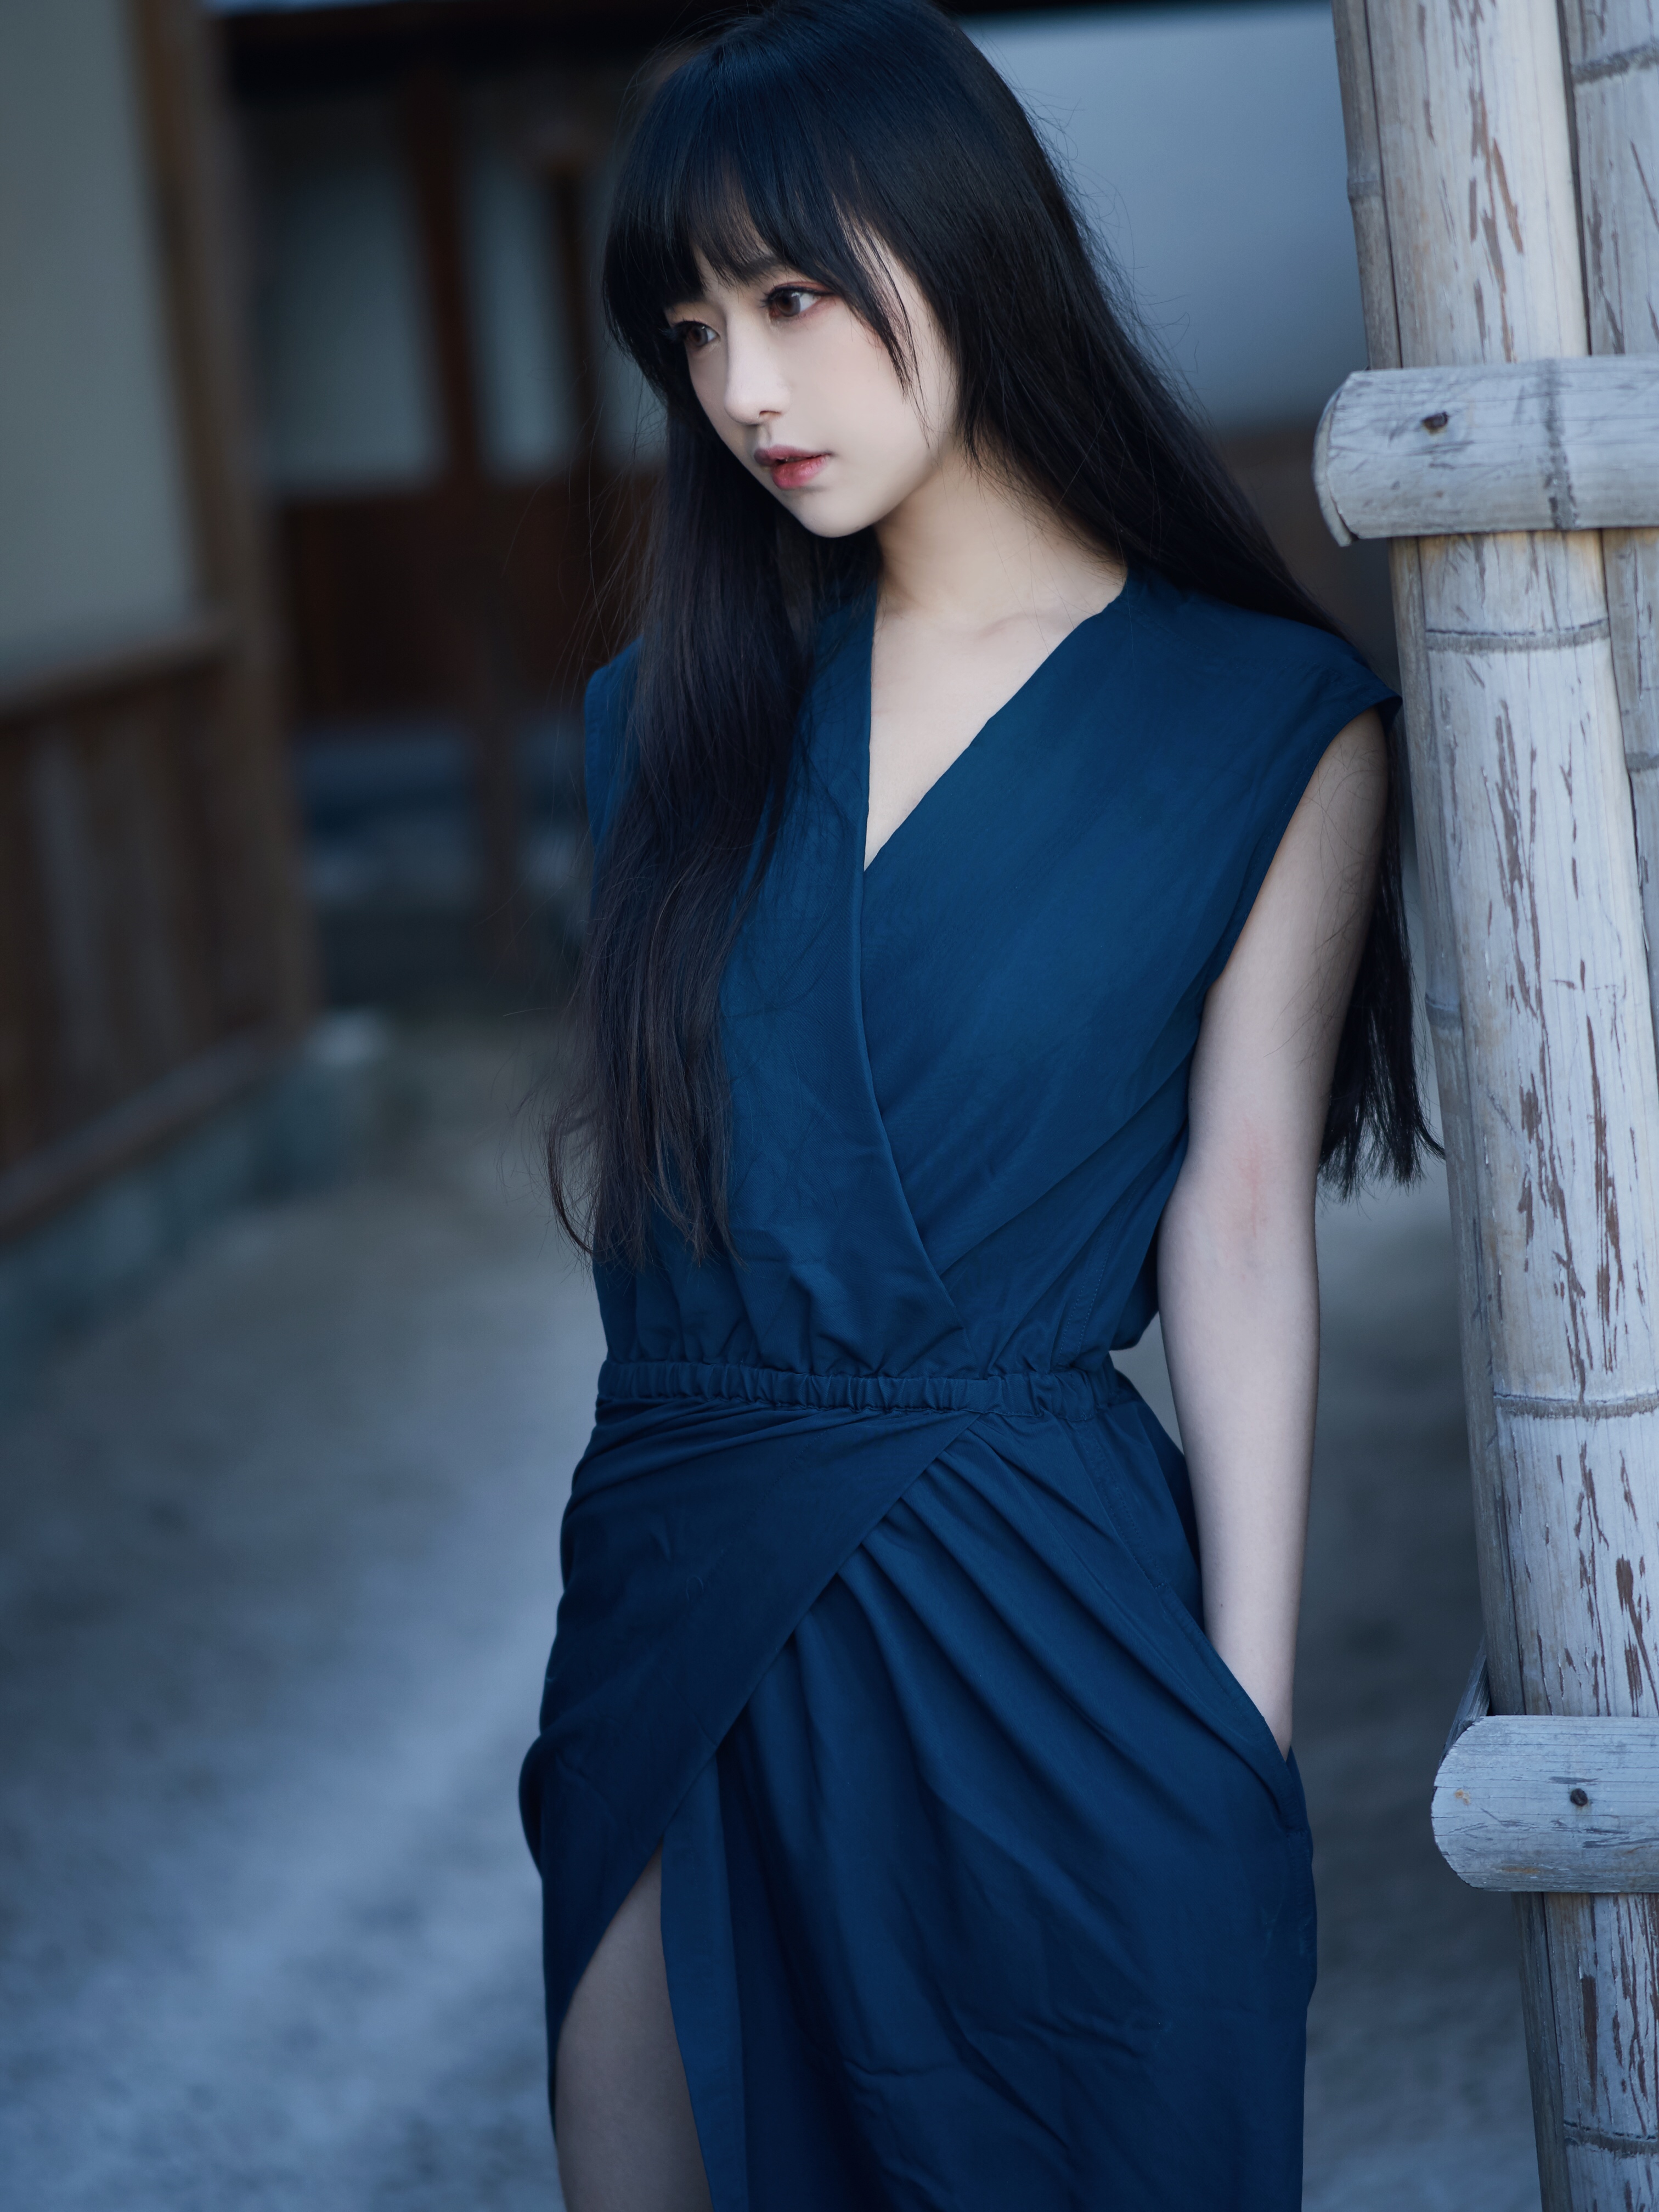 People 3024x4032 Asian dress outdoors long hair black hair blue dress women Shika XiaoLu